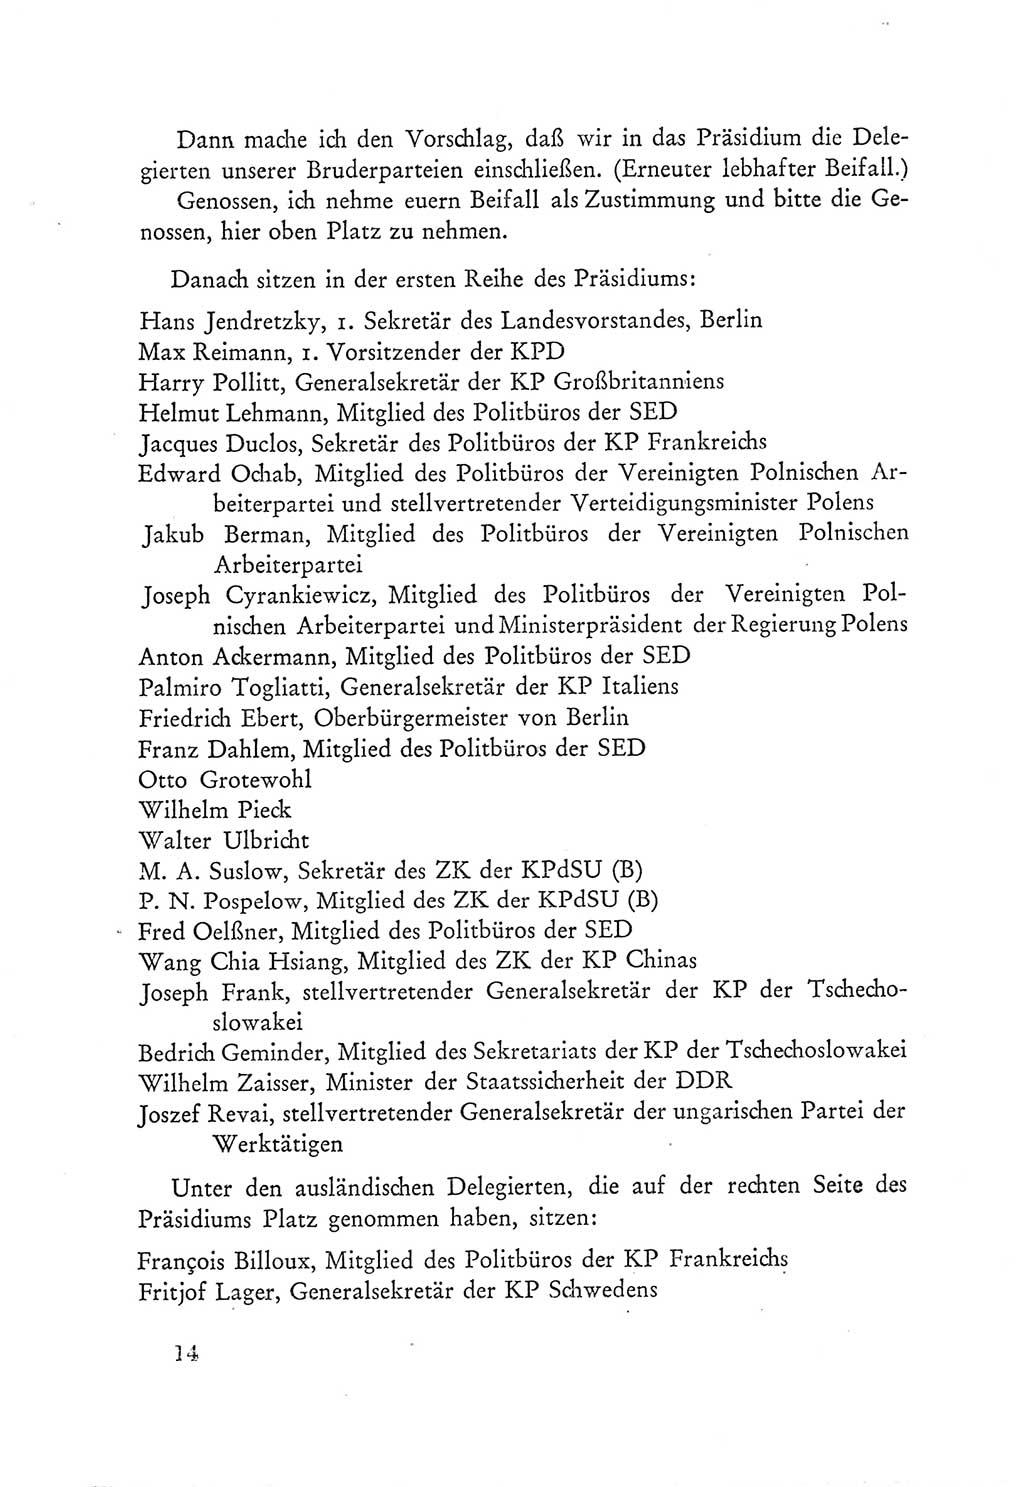 Protokoll der Verhandlungen des Ⅲ. Parteitages der Sozialistischen Einheitspartei Deutschlands (SED) [Deutsche Demokratische Republik (DDR)] 1950, Band 1, Seite 14 (Prot. Verh. Ⅲ. PT SED DDR 1950, Bd. 1, S. 14)